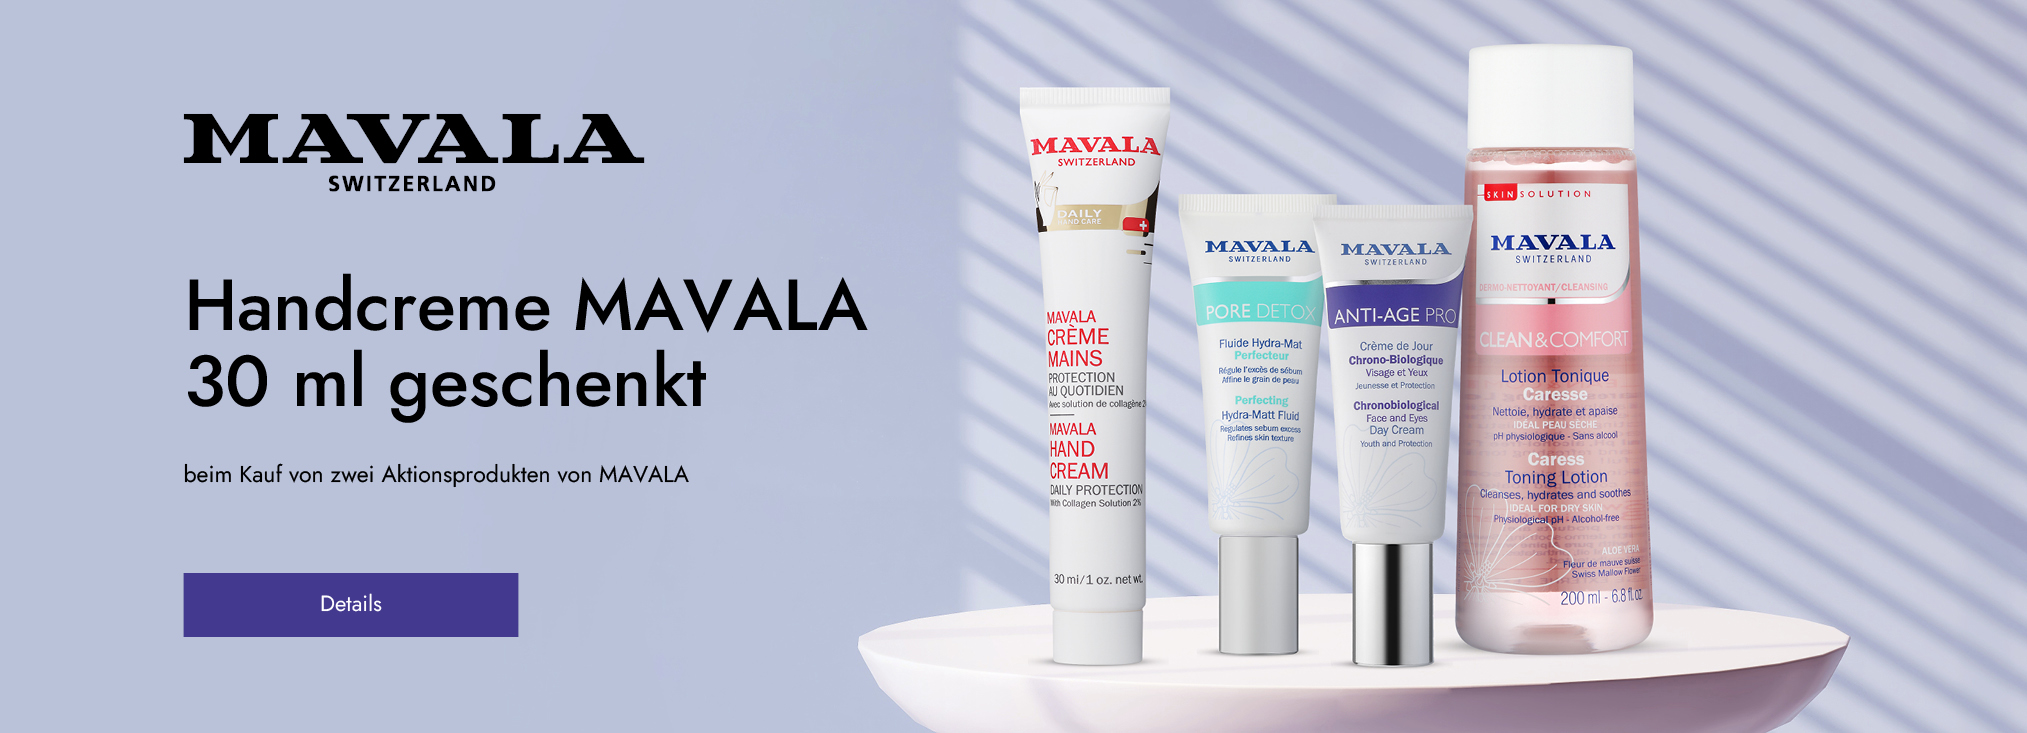 MAVALA_hand care